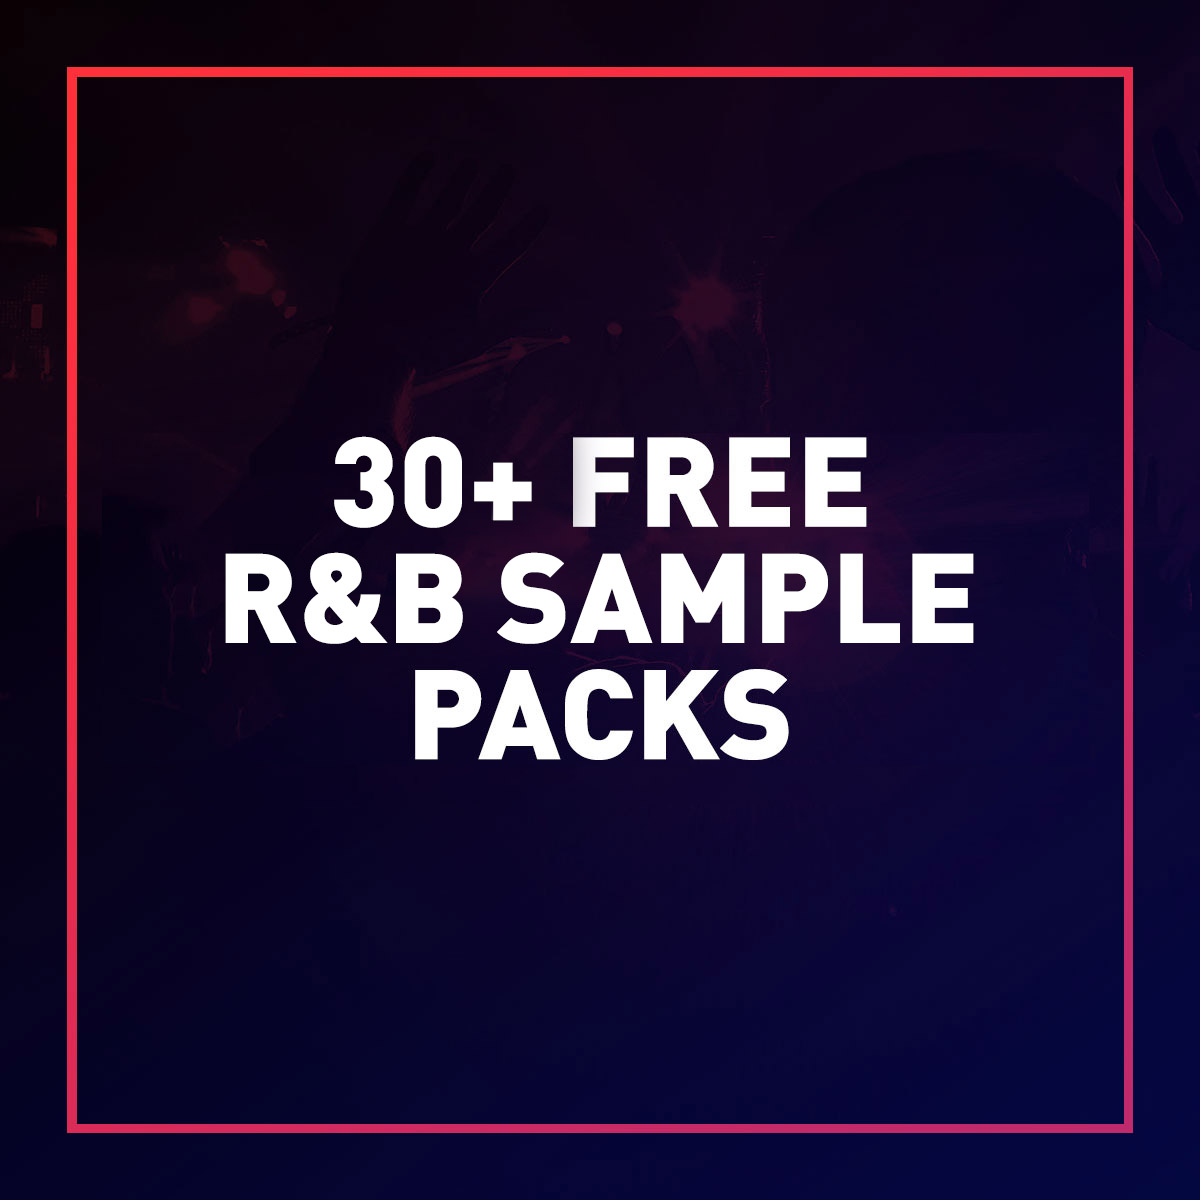 30+ Free R&B Sample Packs 2022 - Free Beats & Samples